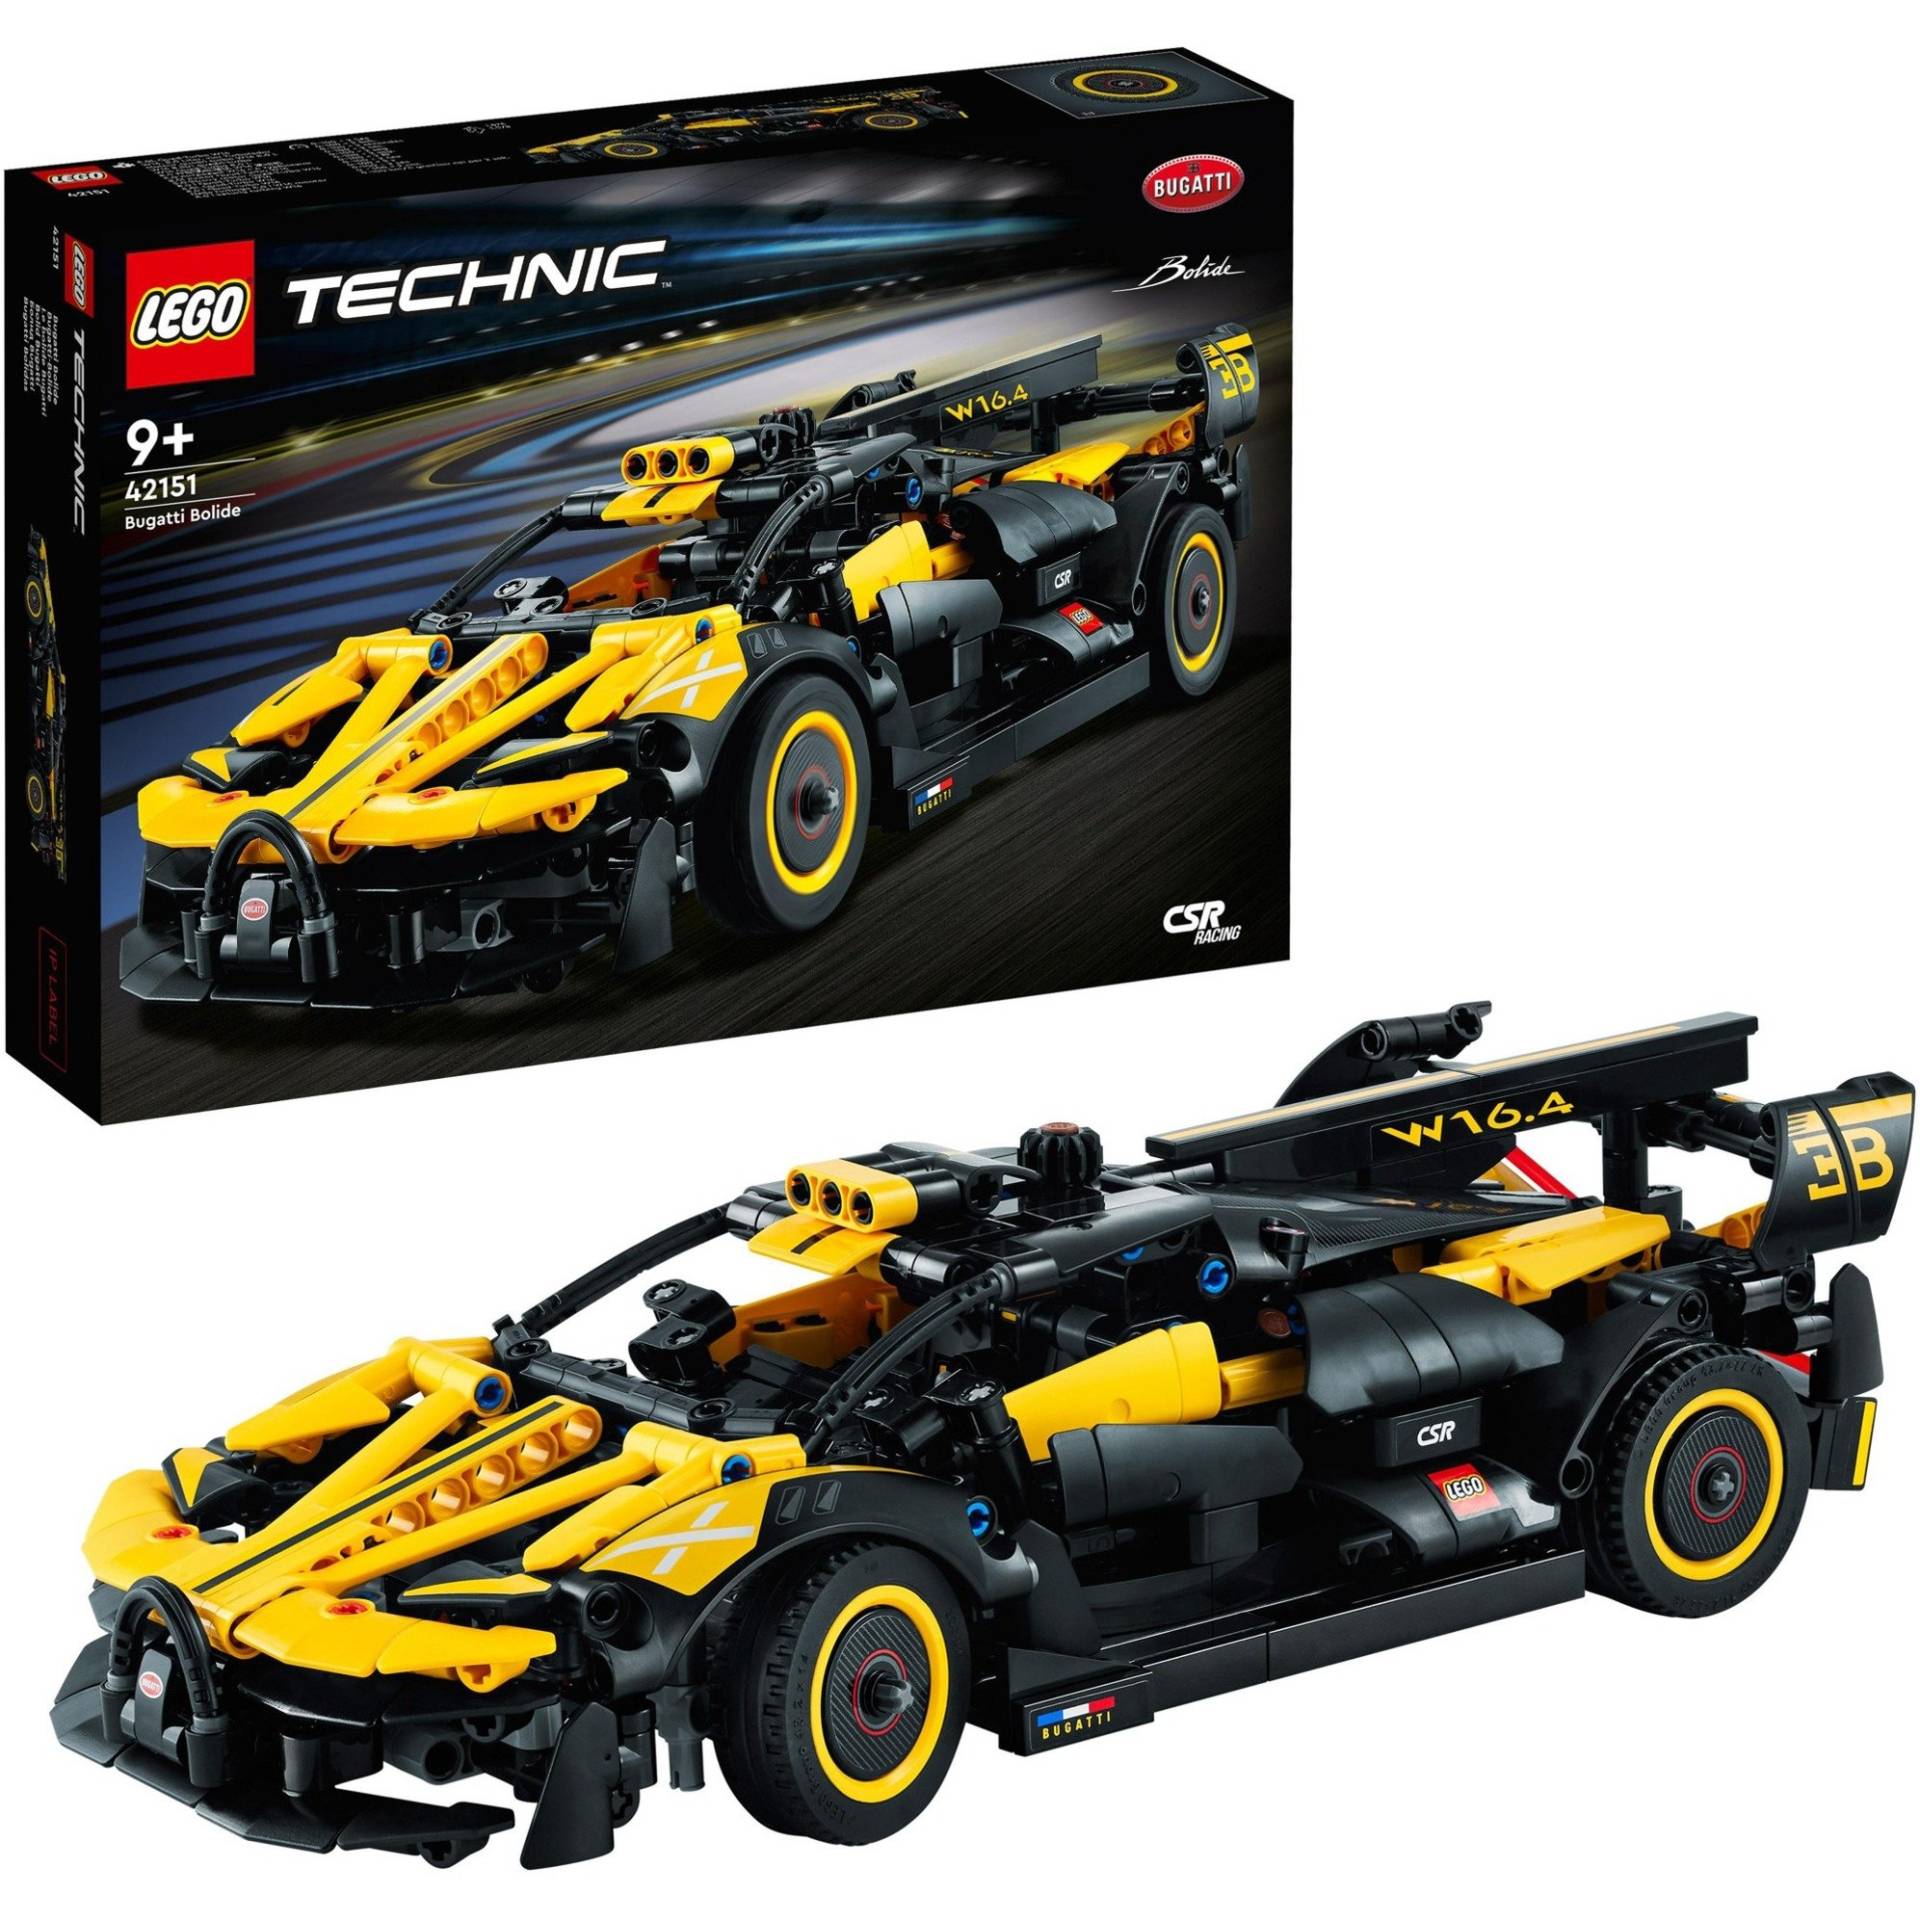 42151 Technic Bugatti-Bolide, Konstruktionsspielzeug von Lego